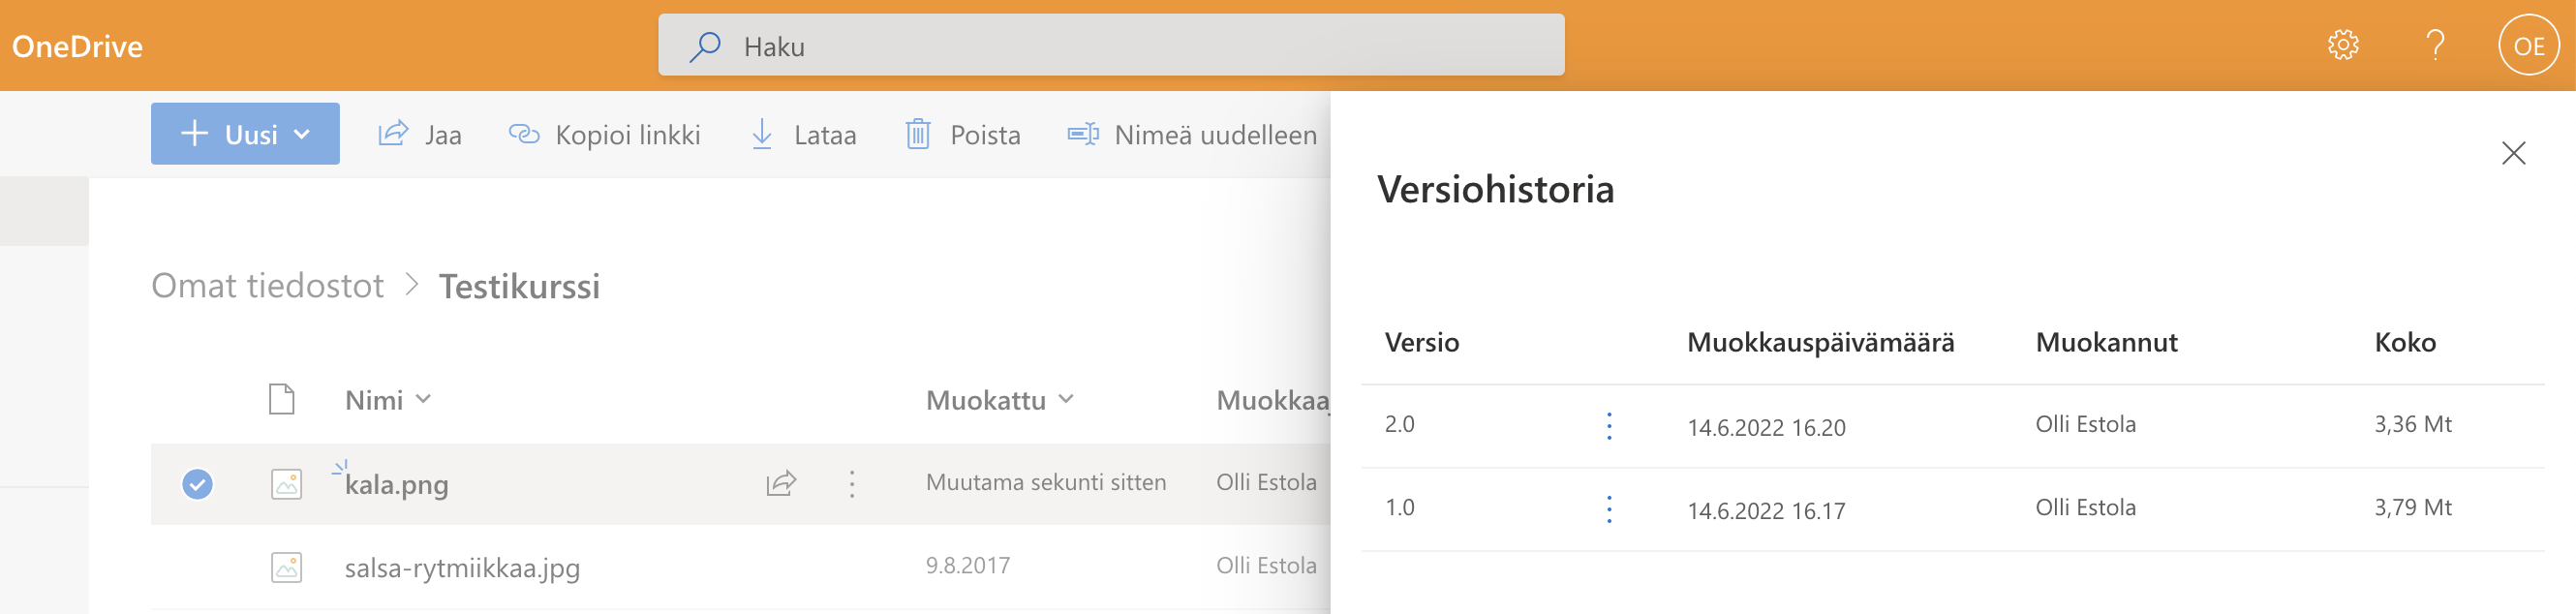 OneDrive näyttää tiedostosta kahta versiota versiohistoriassa